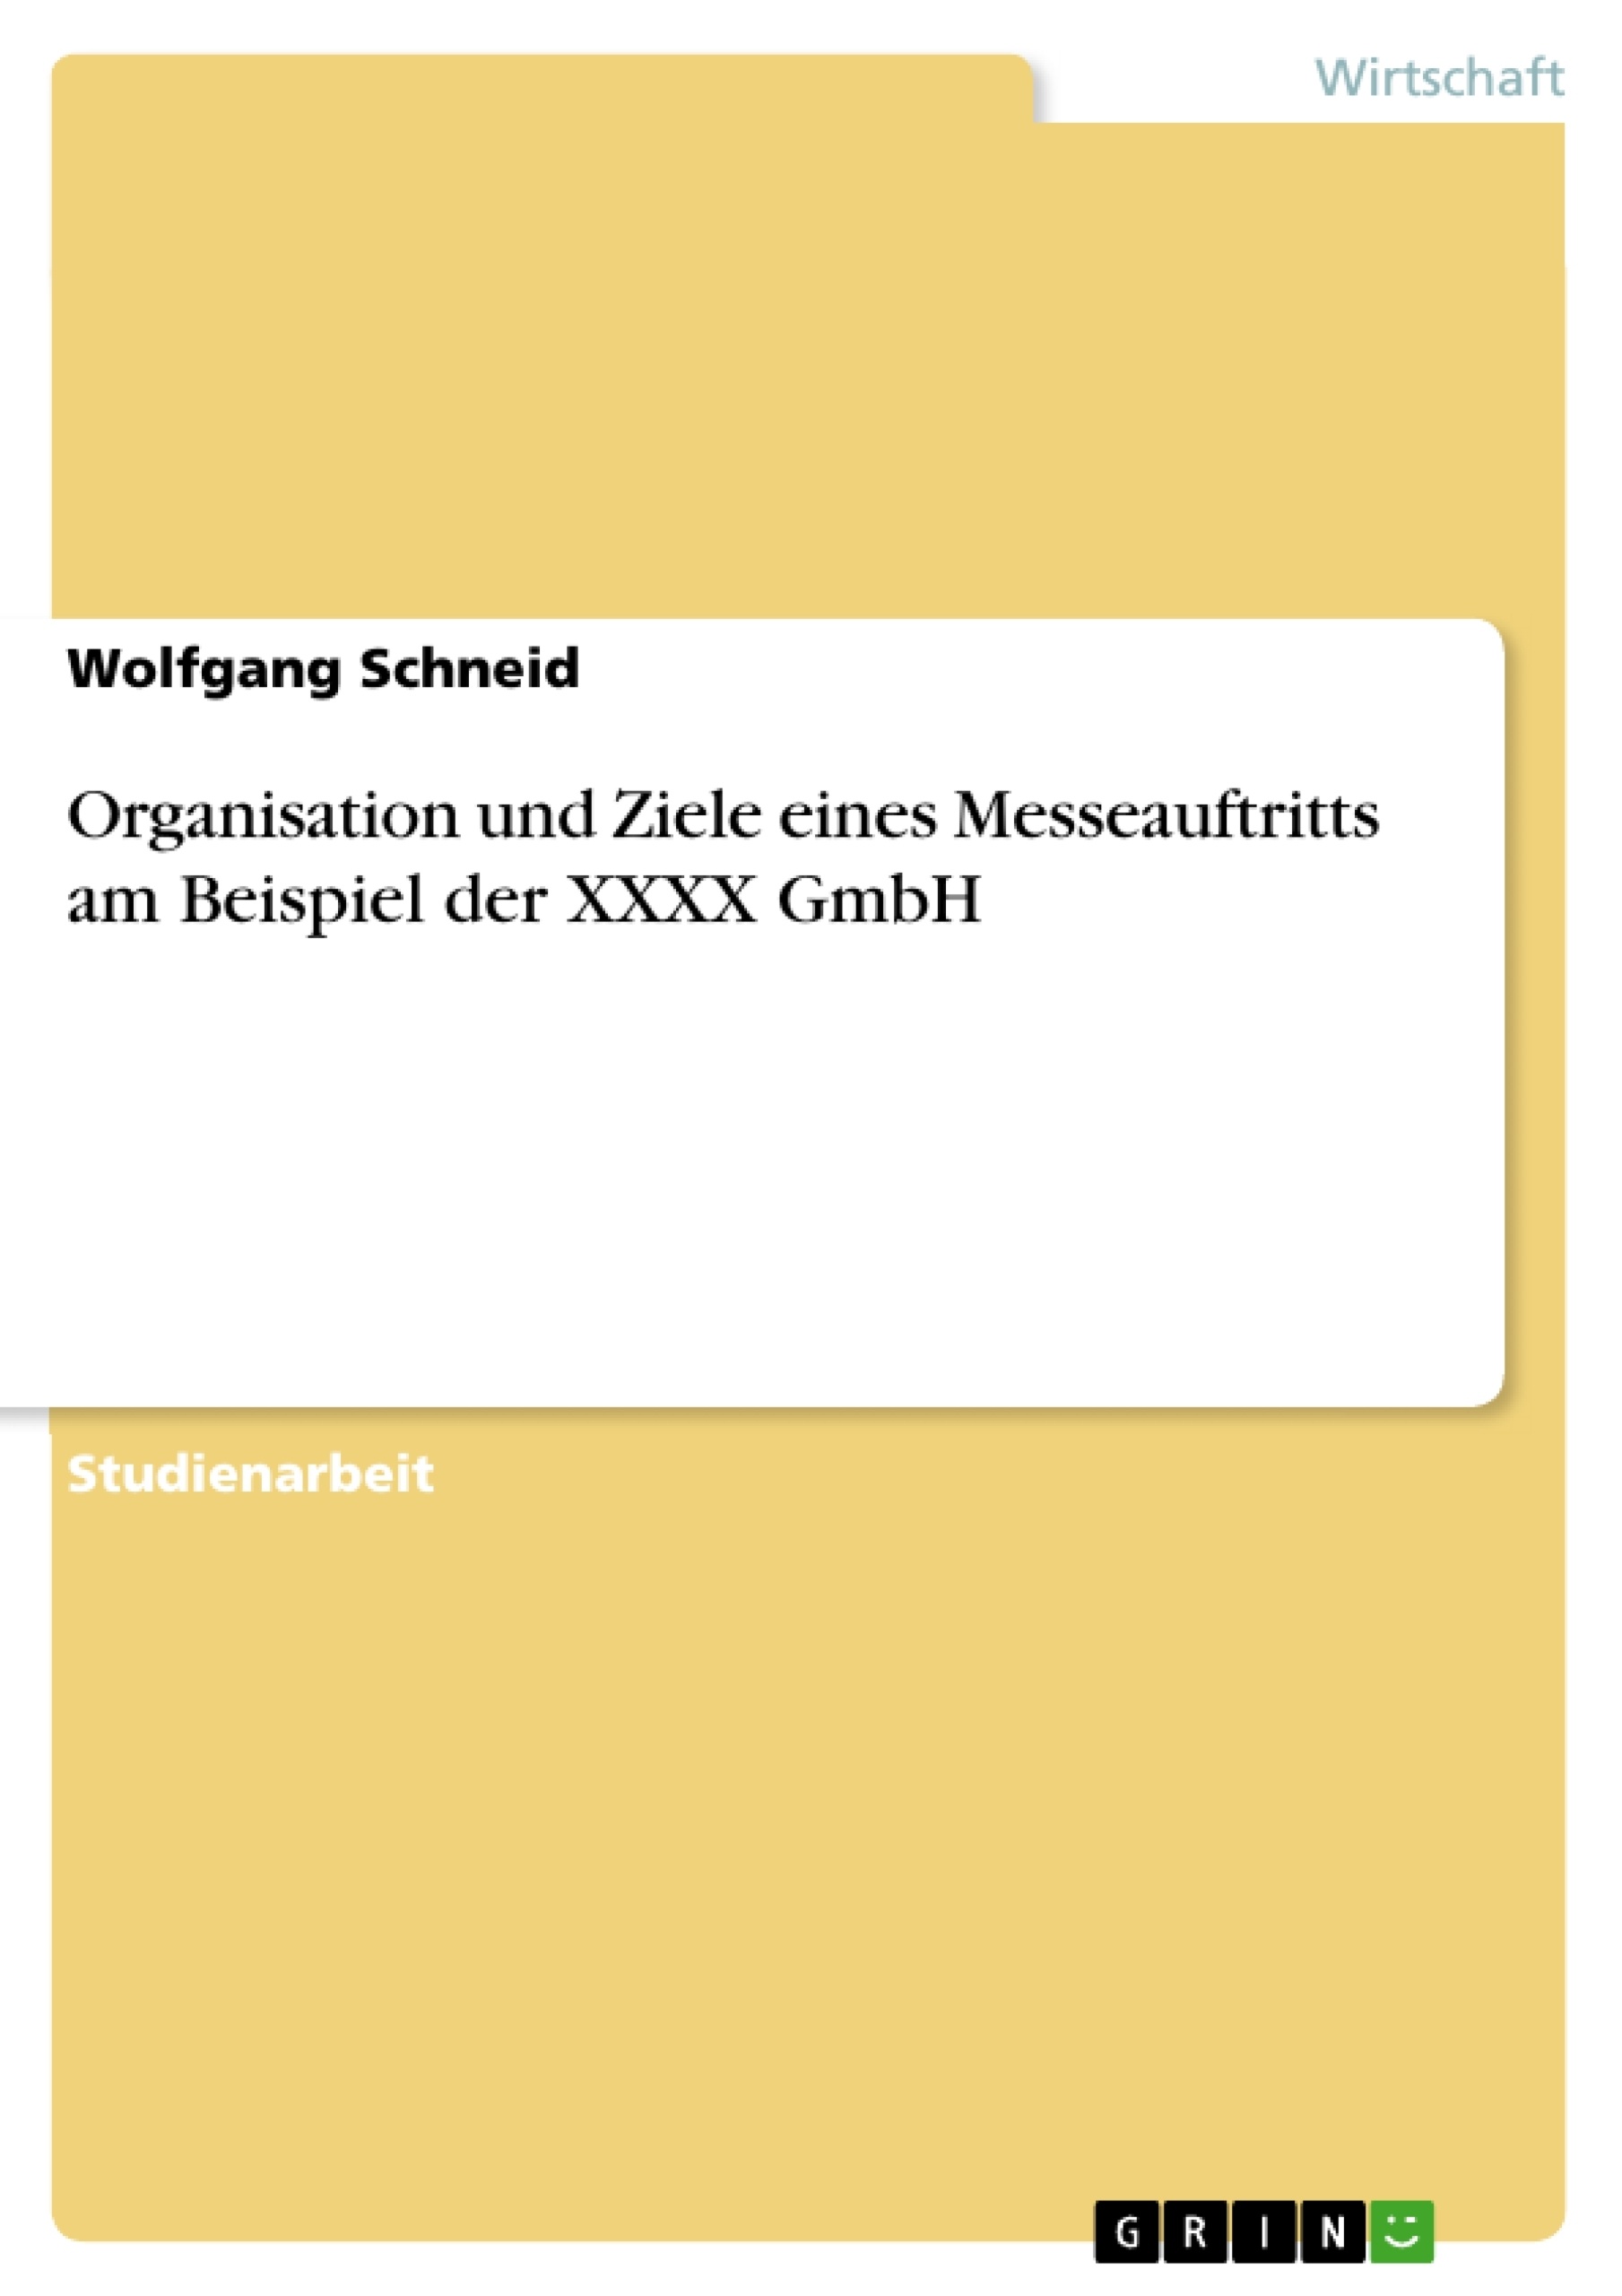 Título: Organisation und Ziele eines Messeauftritts am Beispiel der XXXX GmbH